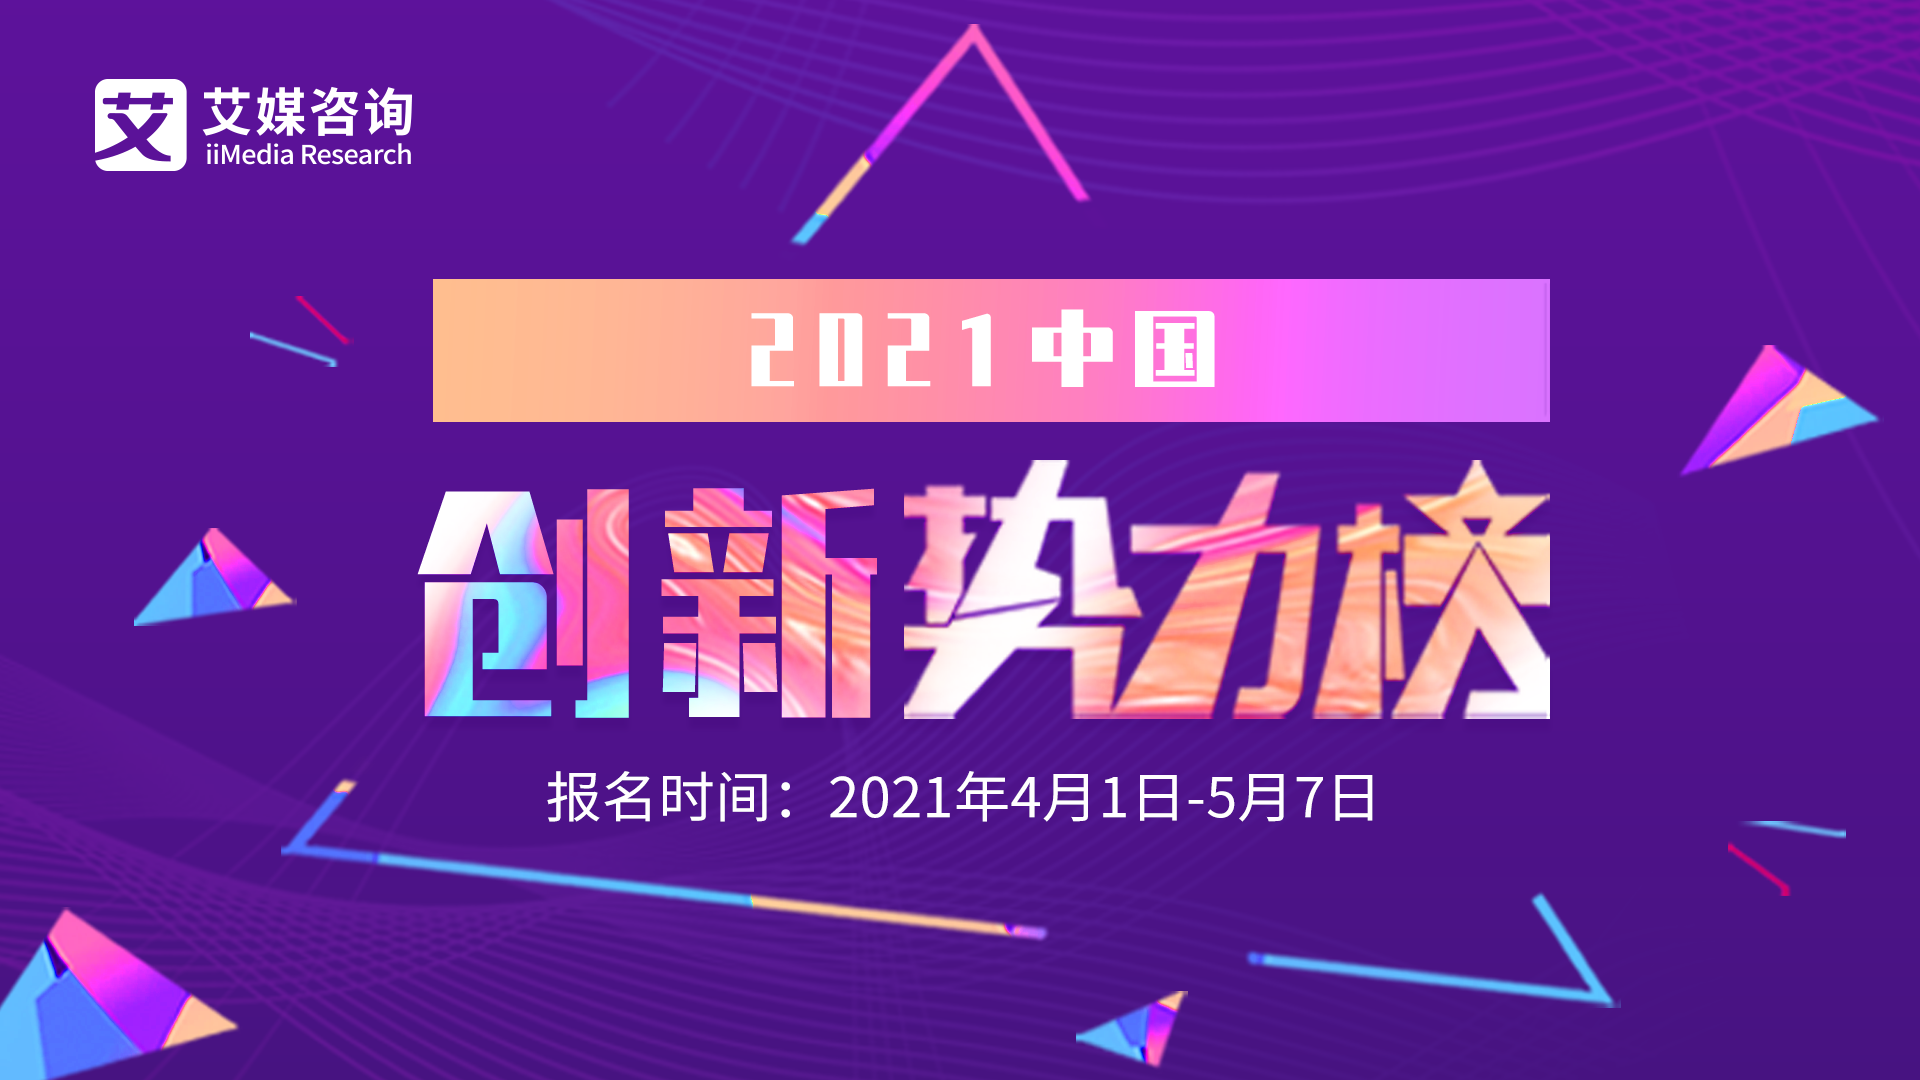 2021中国企业服务产业大会暨年度创新势力榜颁奖盛典（全球未来科技大会）